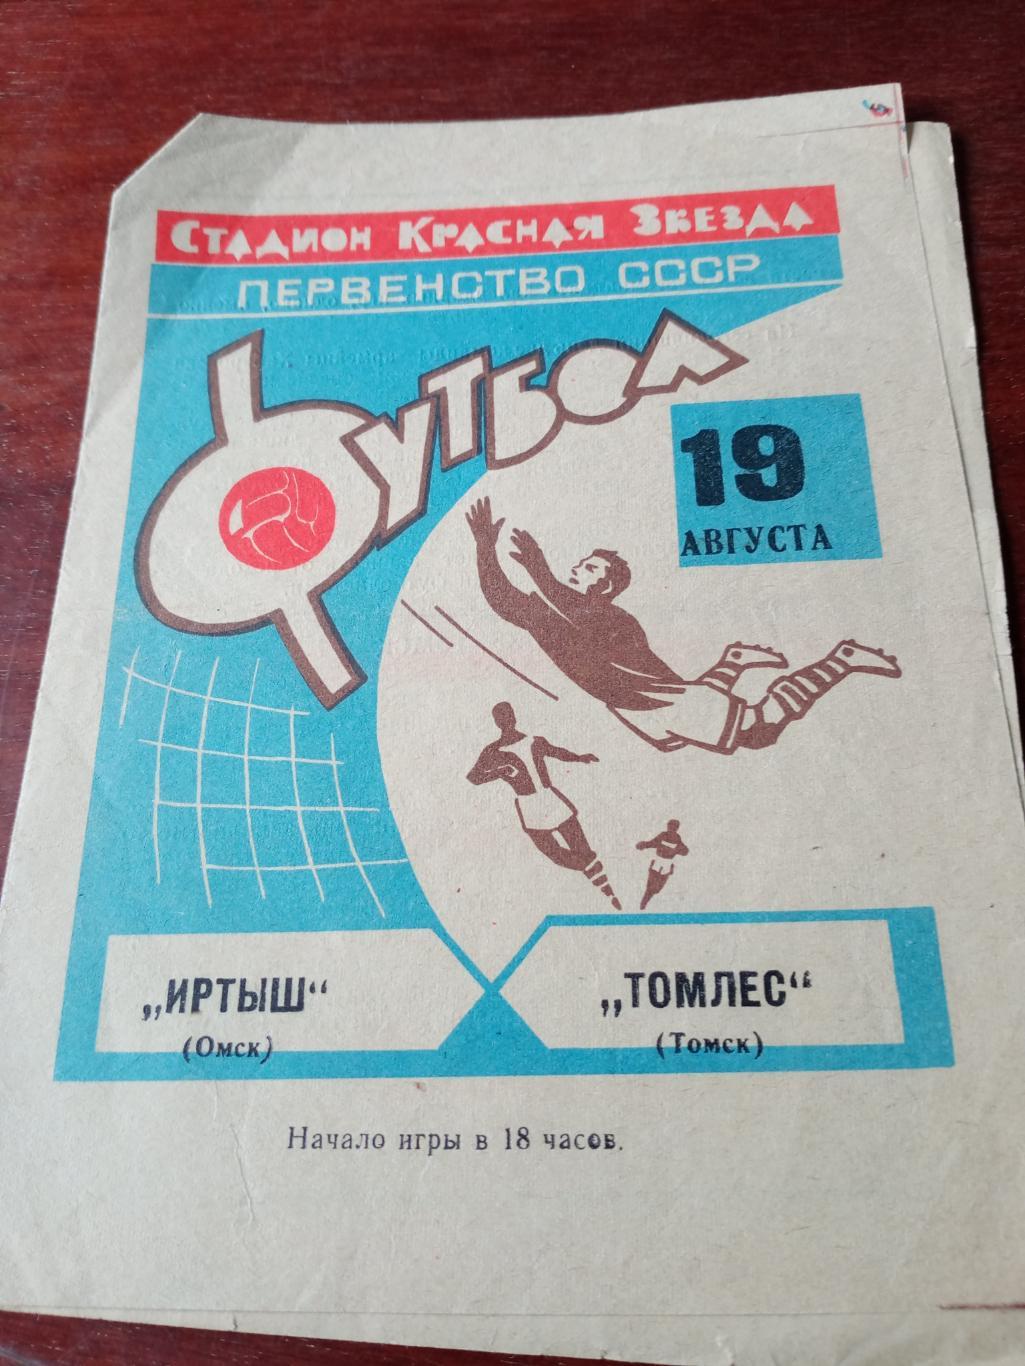 Иртыш Омск - Томлес Томск. 19 августа 1969 год